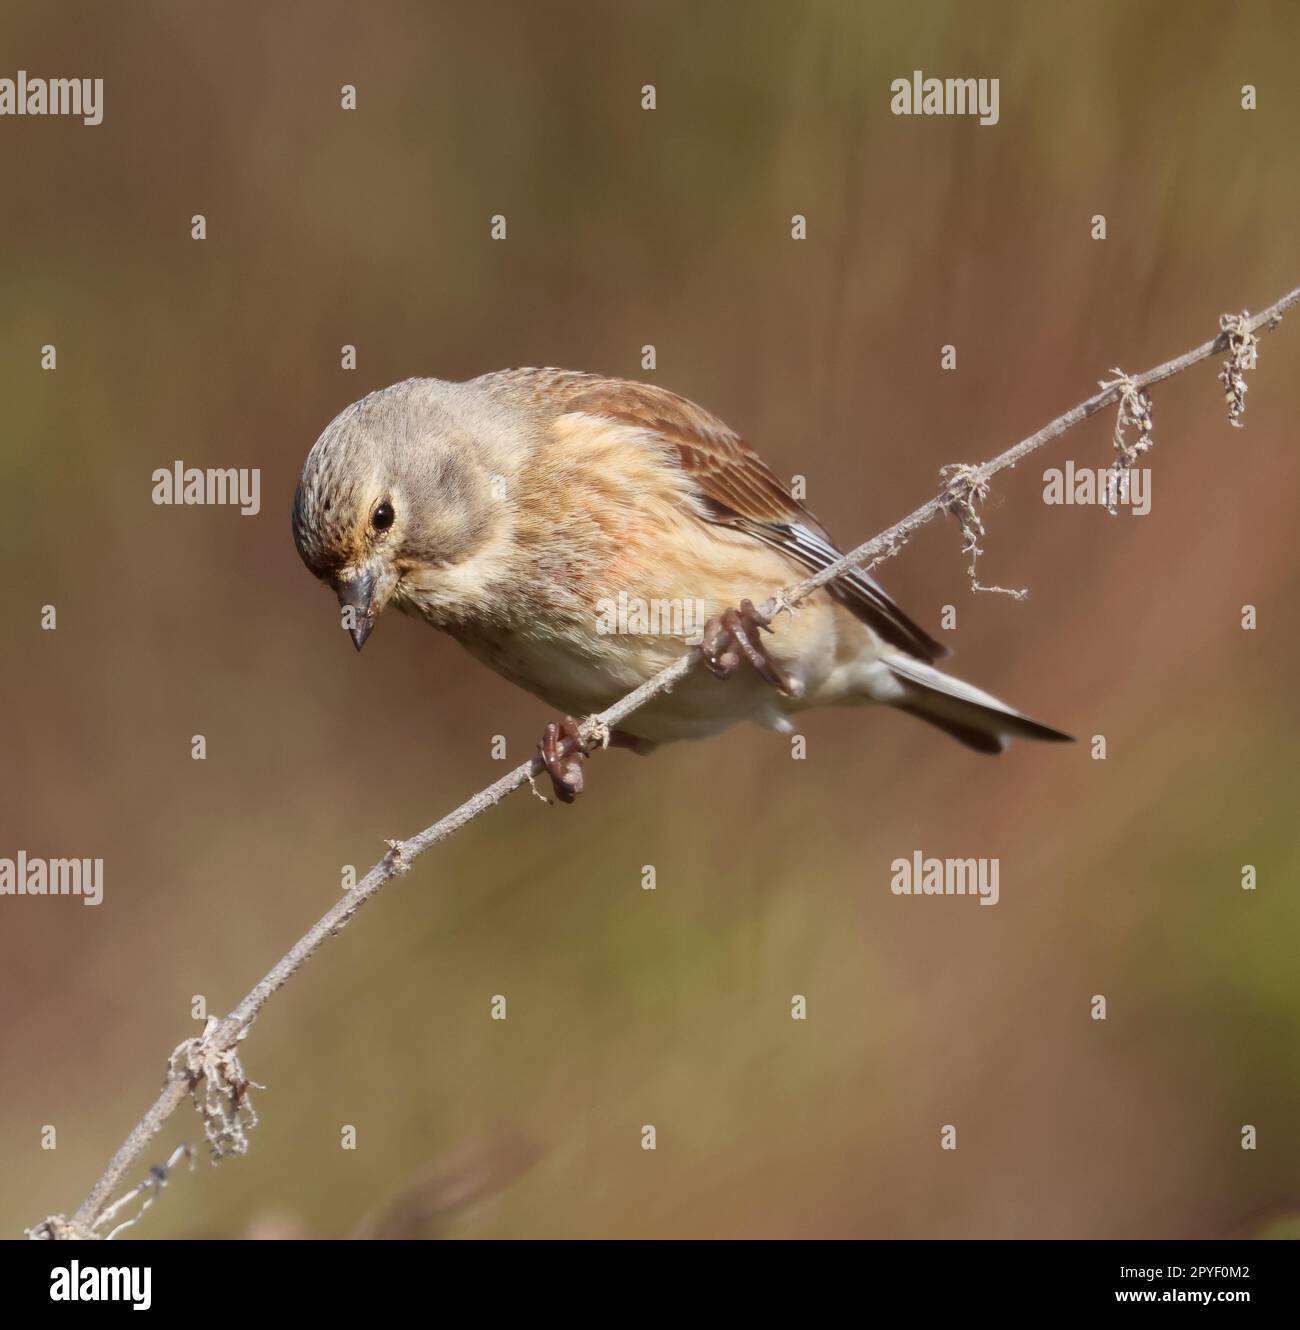 Linnet un oiseau agricole commun dans le Cotswold Hills Gloucestershire Royaume-Uni Banque D'Images